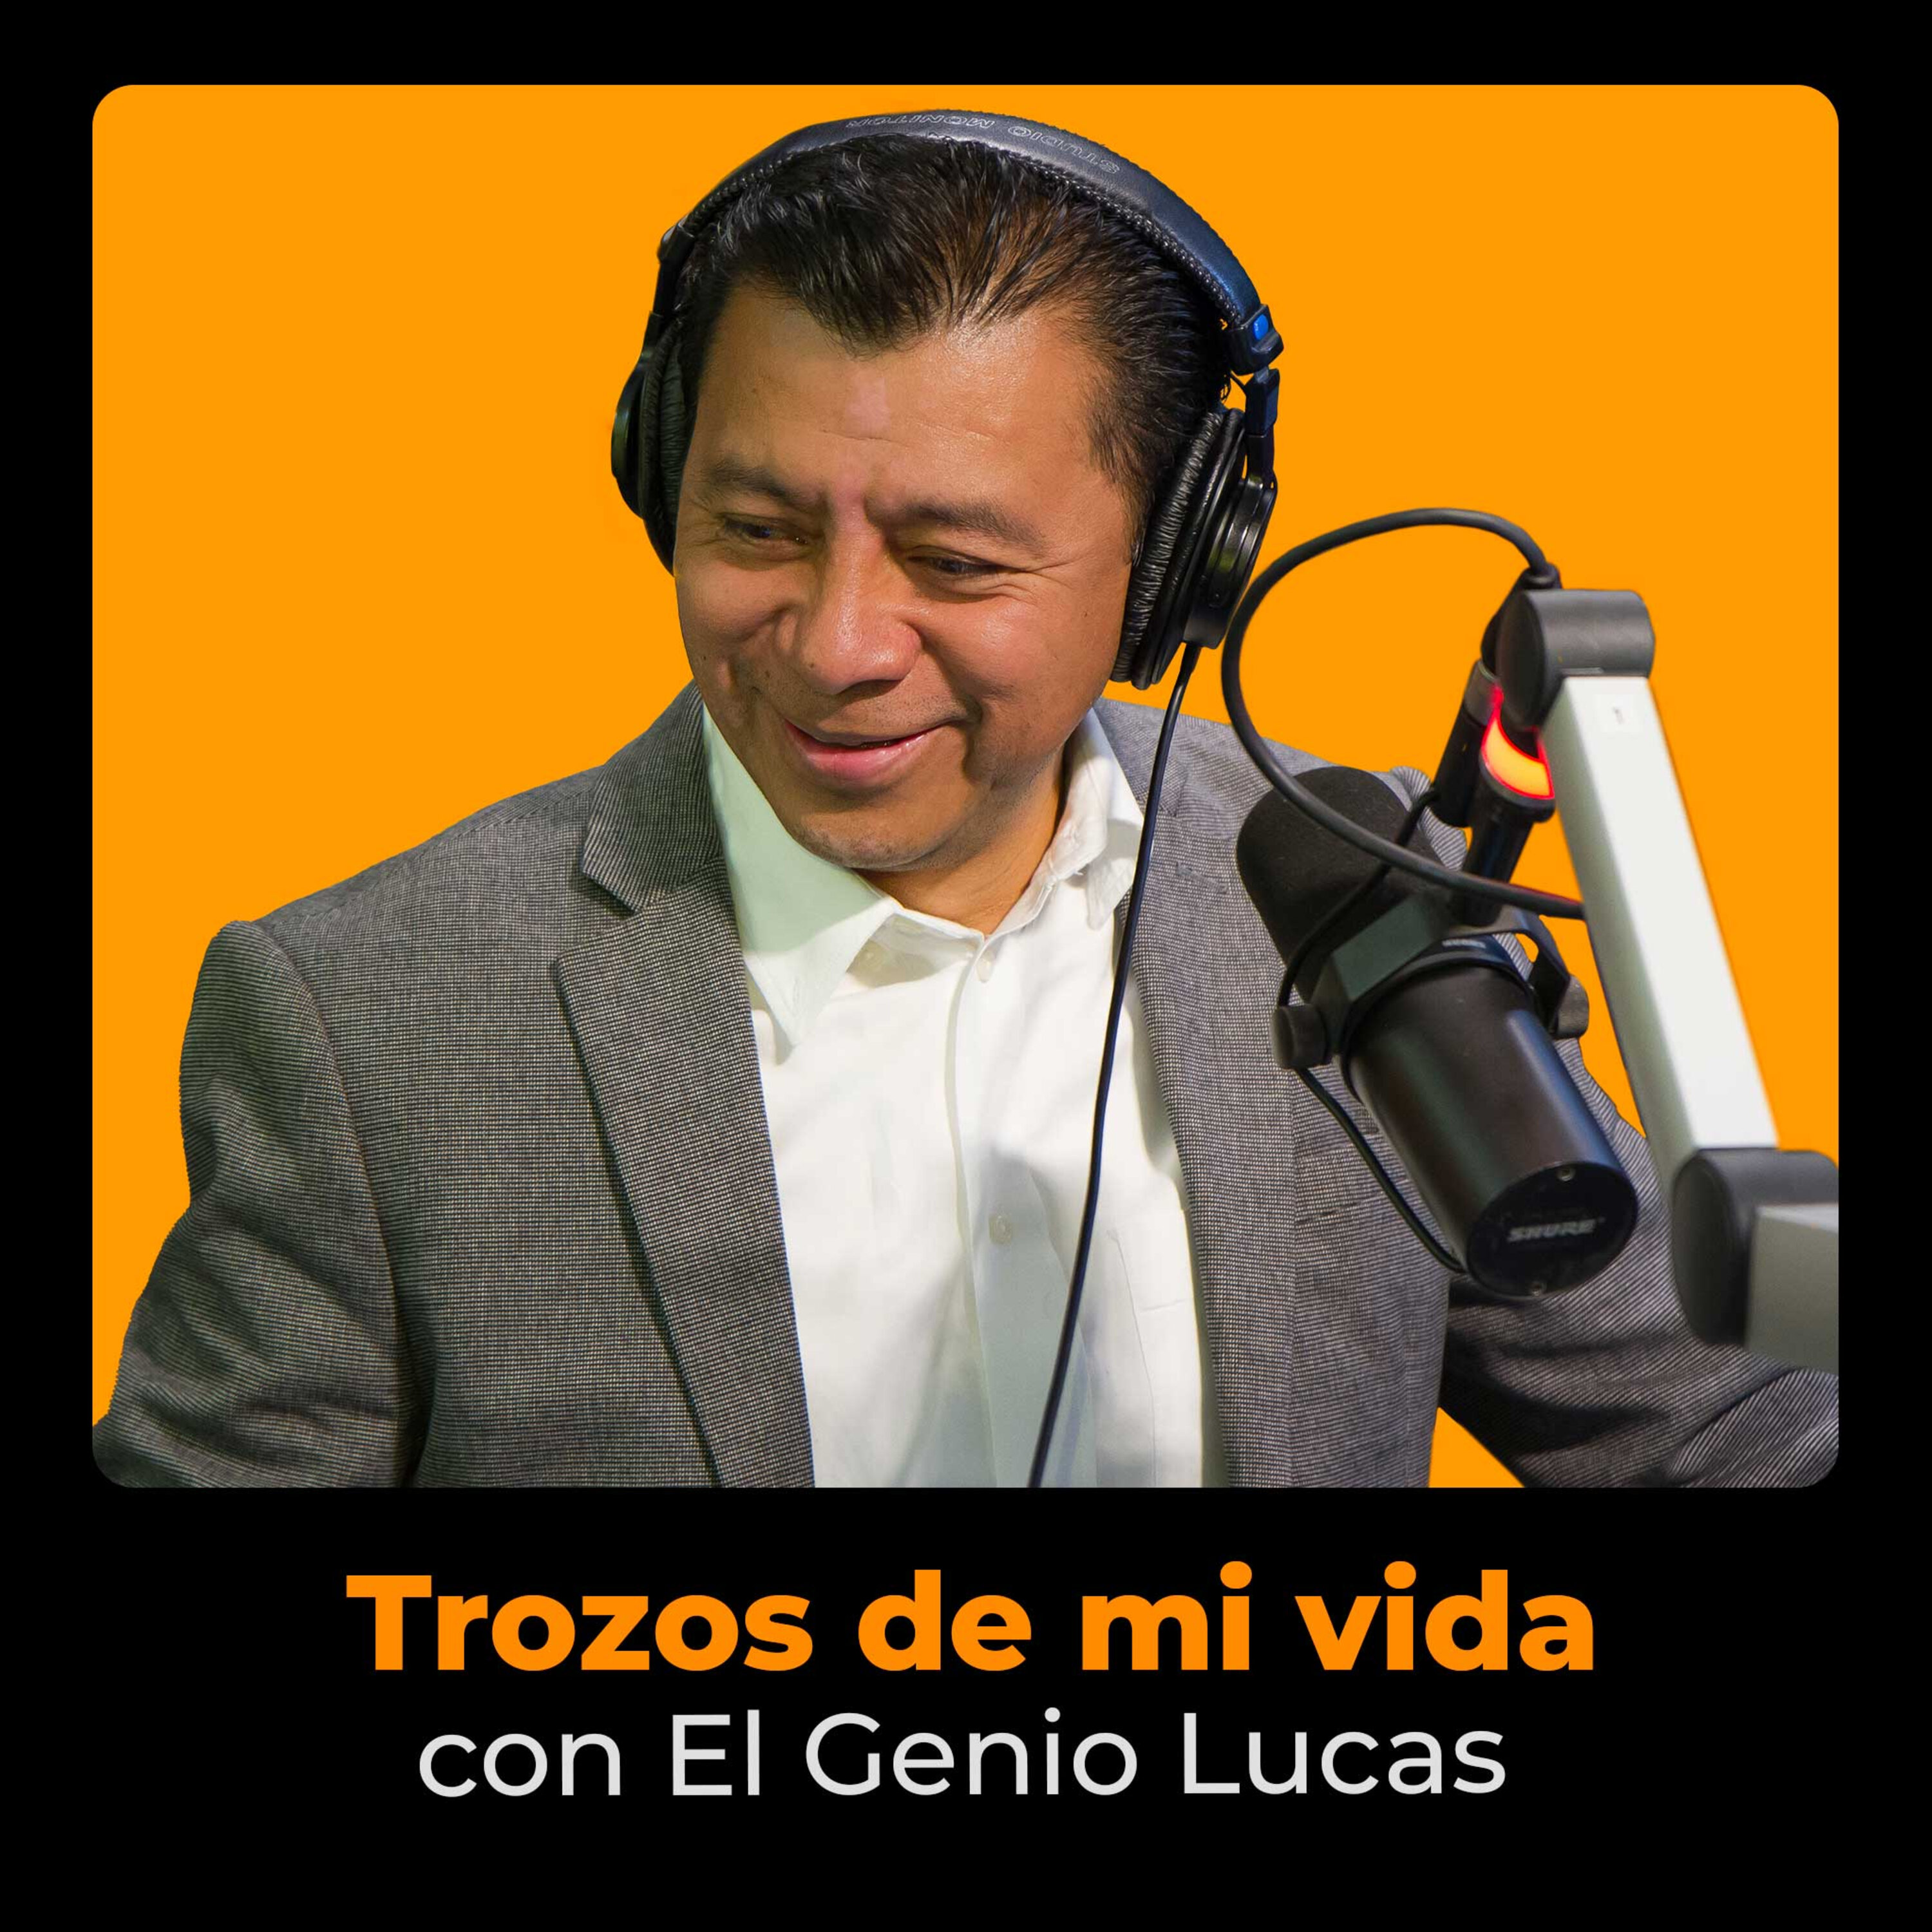 El Genio Lucas: Ganando $3,600 Al Mes a Solo $700 en Radio